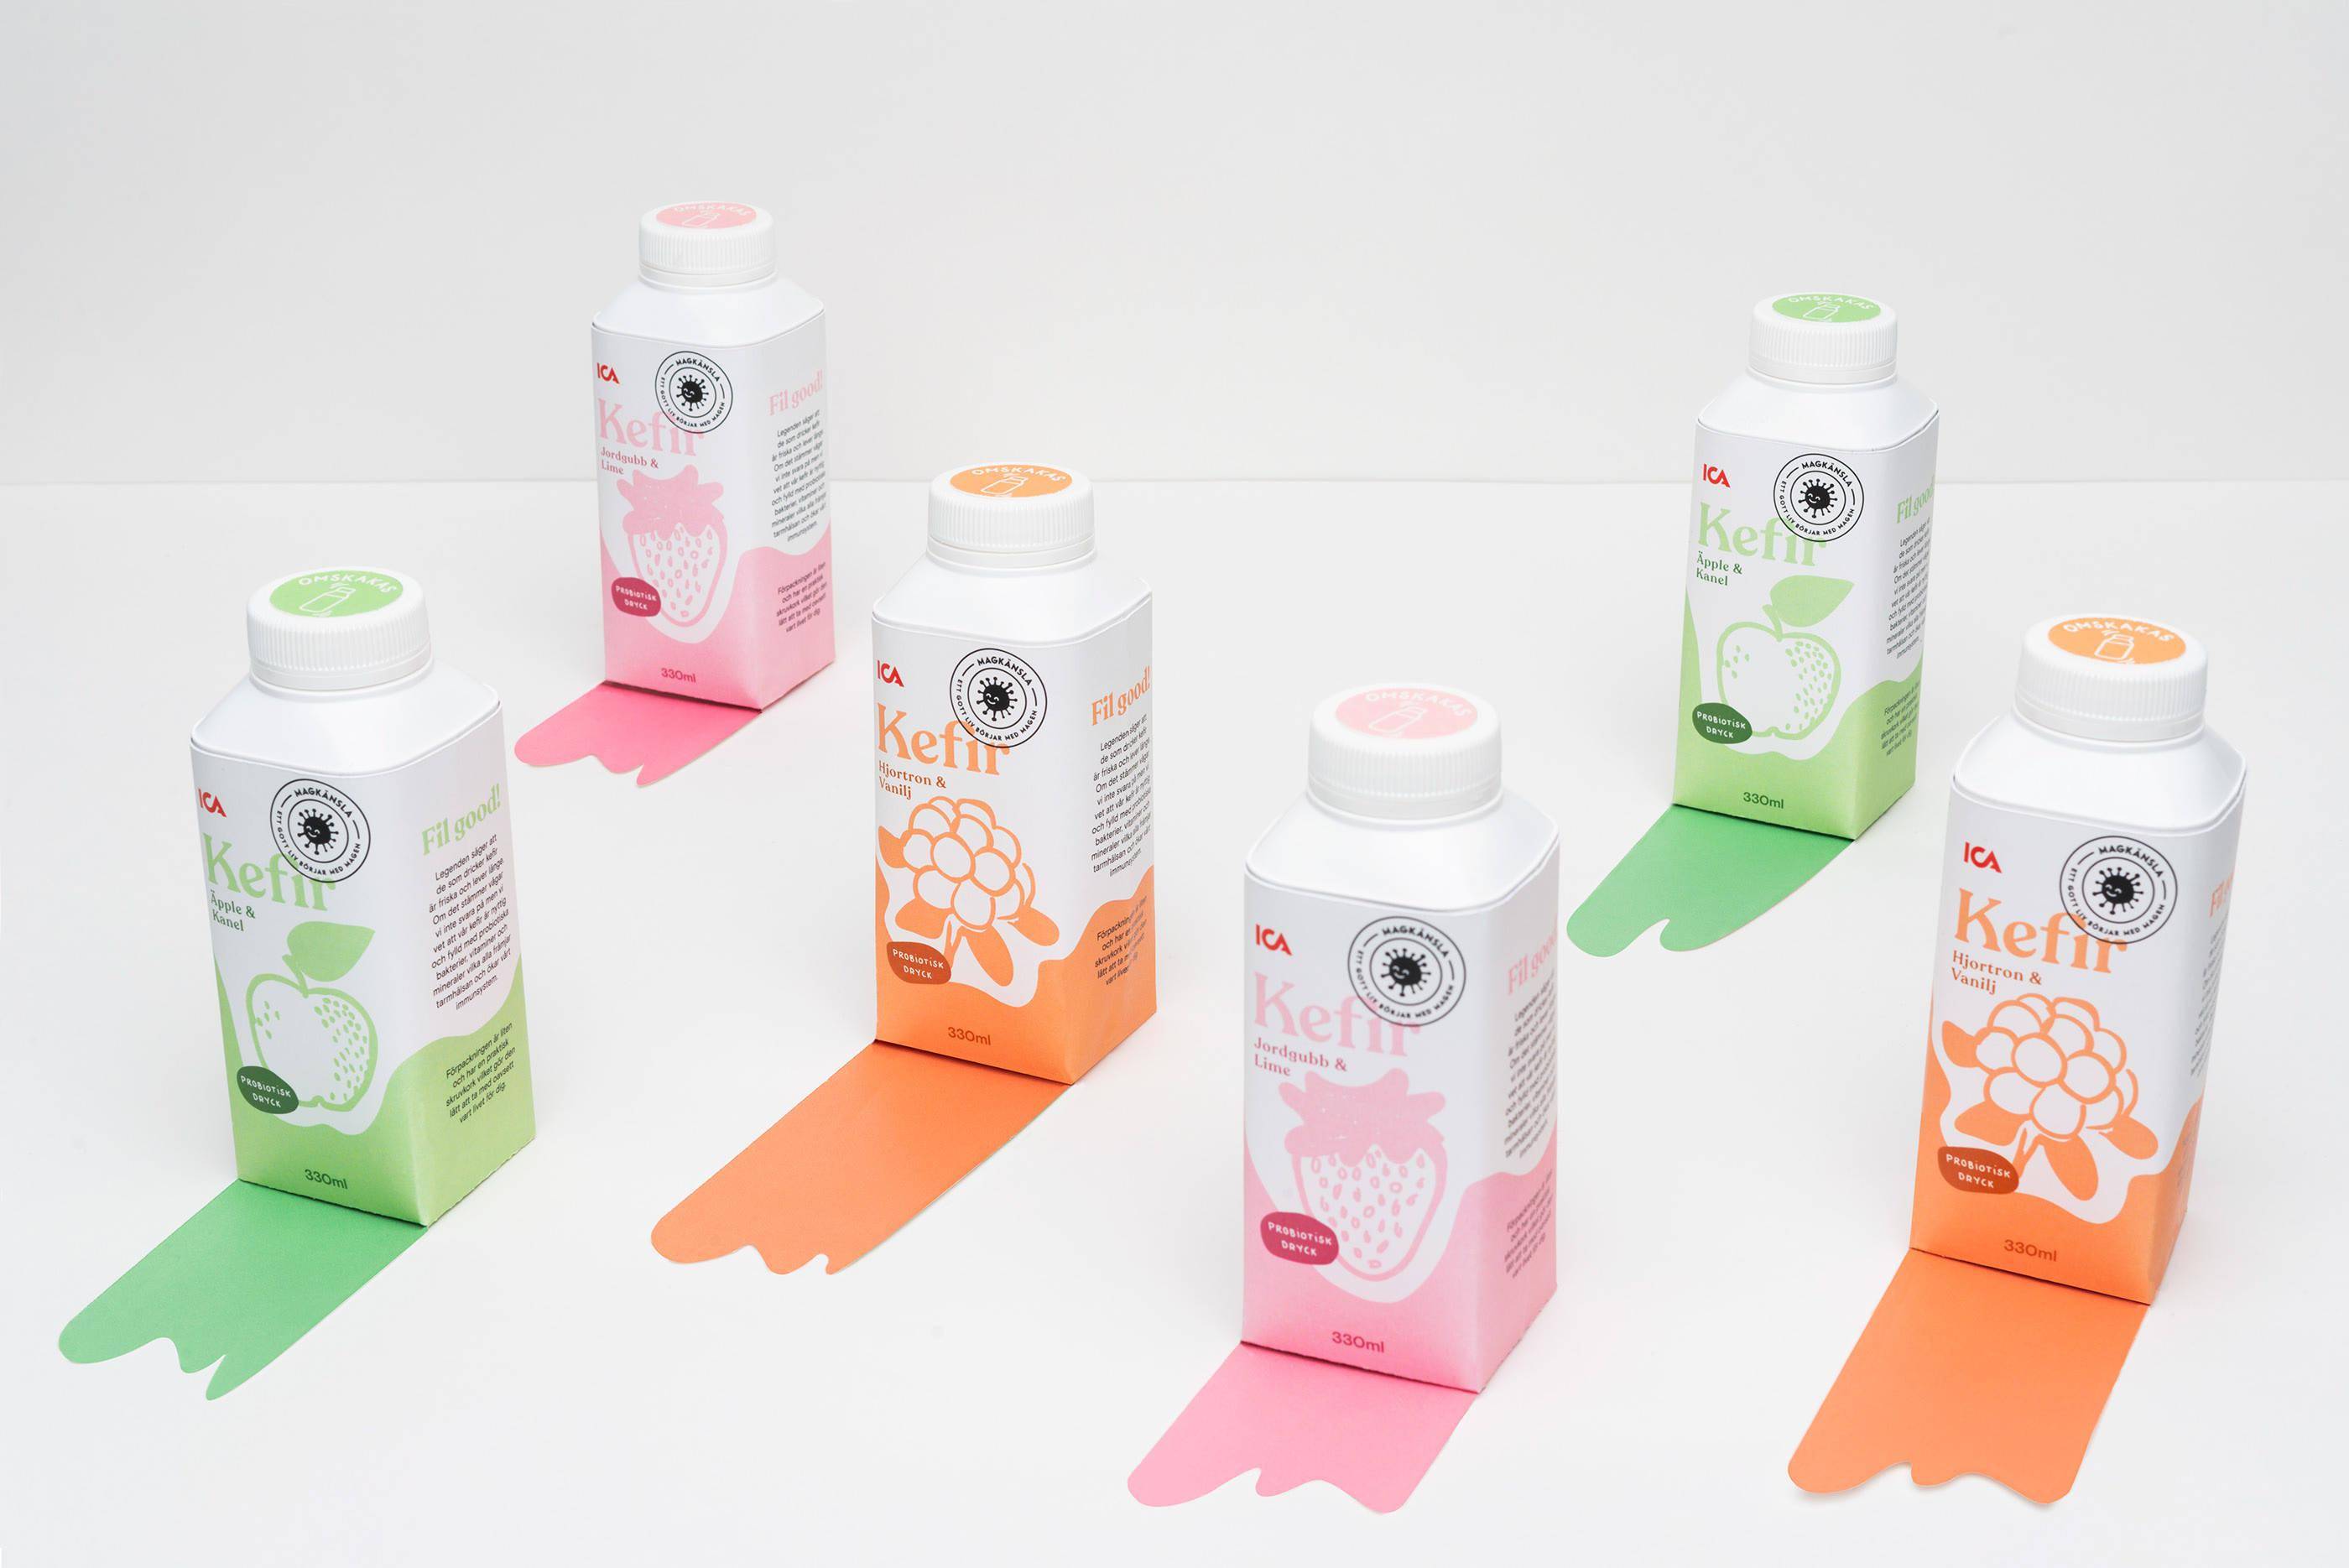 复合口味的酸奶包装创意-水果味上述产品带有自己独有的视觉设计特点